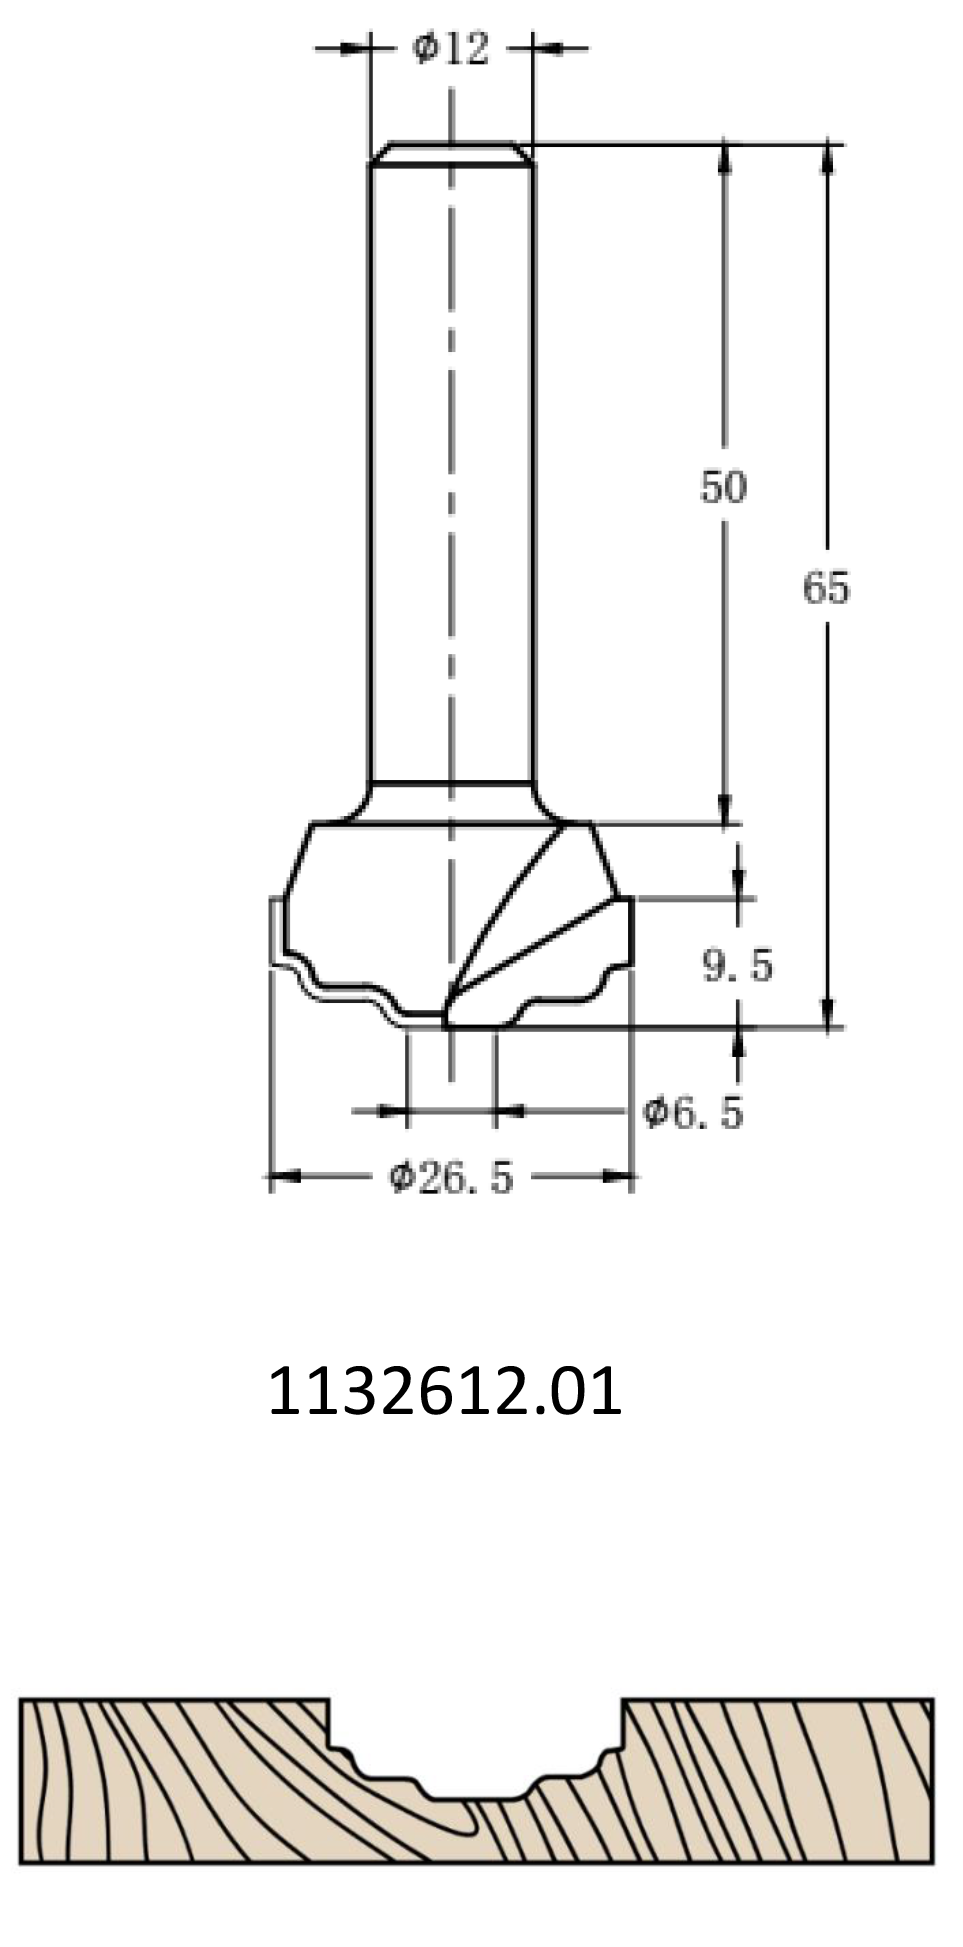 Фреза алмазная филёночная TD-113 D=26x9.5x65 S=12 Rotis 1132612.01  